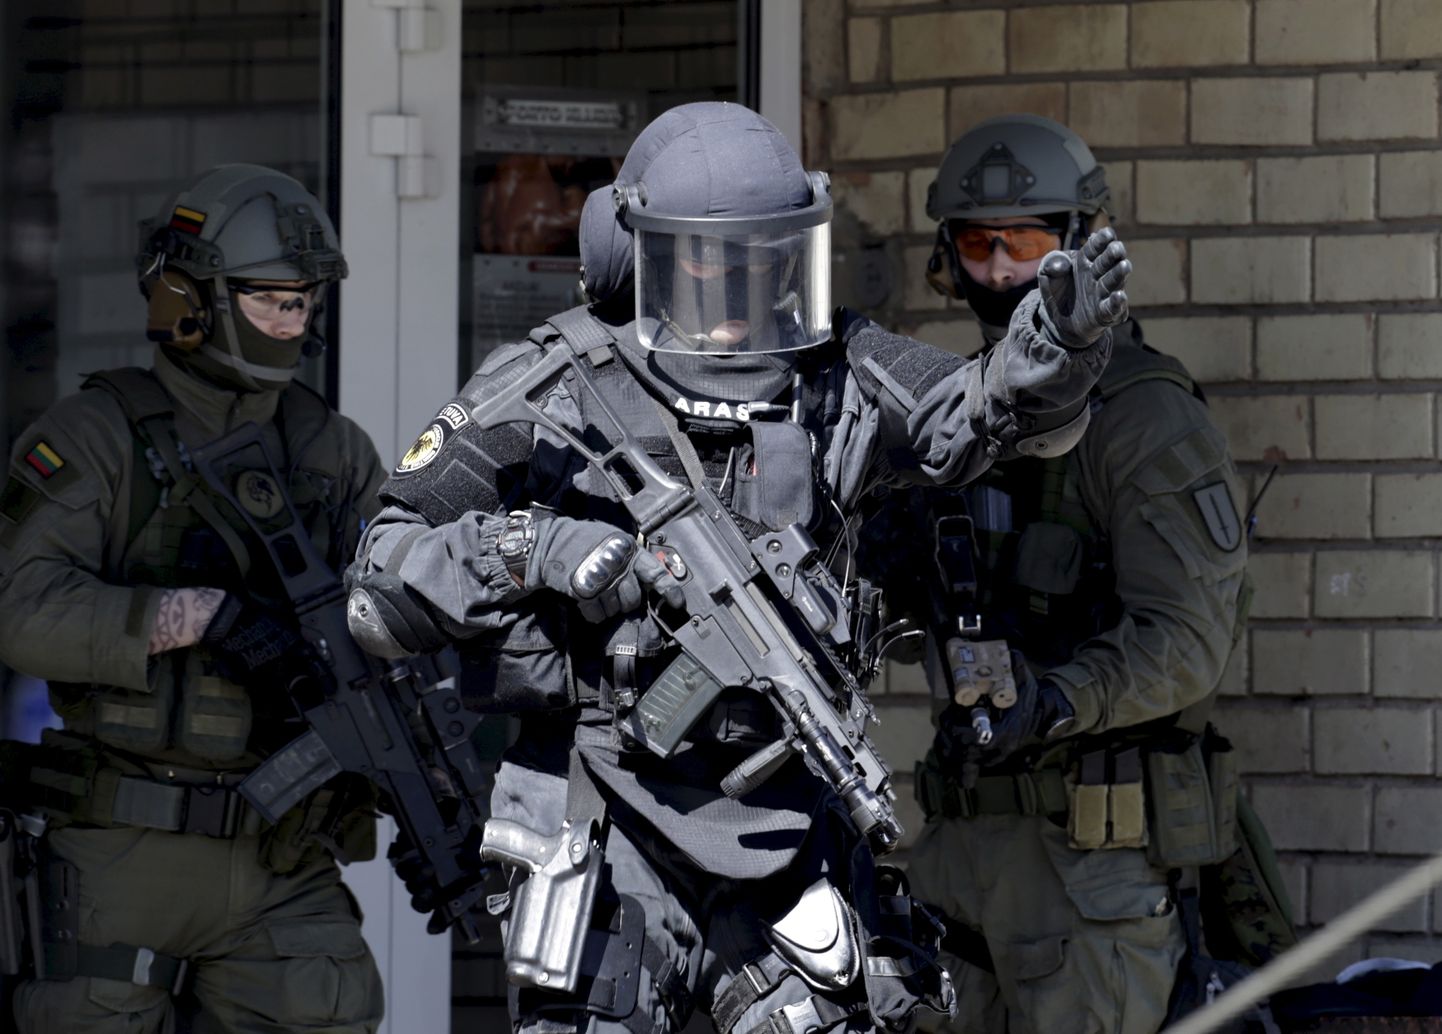 Leedu politsei eriüksuse Aras liikmed. Foto on illustratiivne.